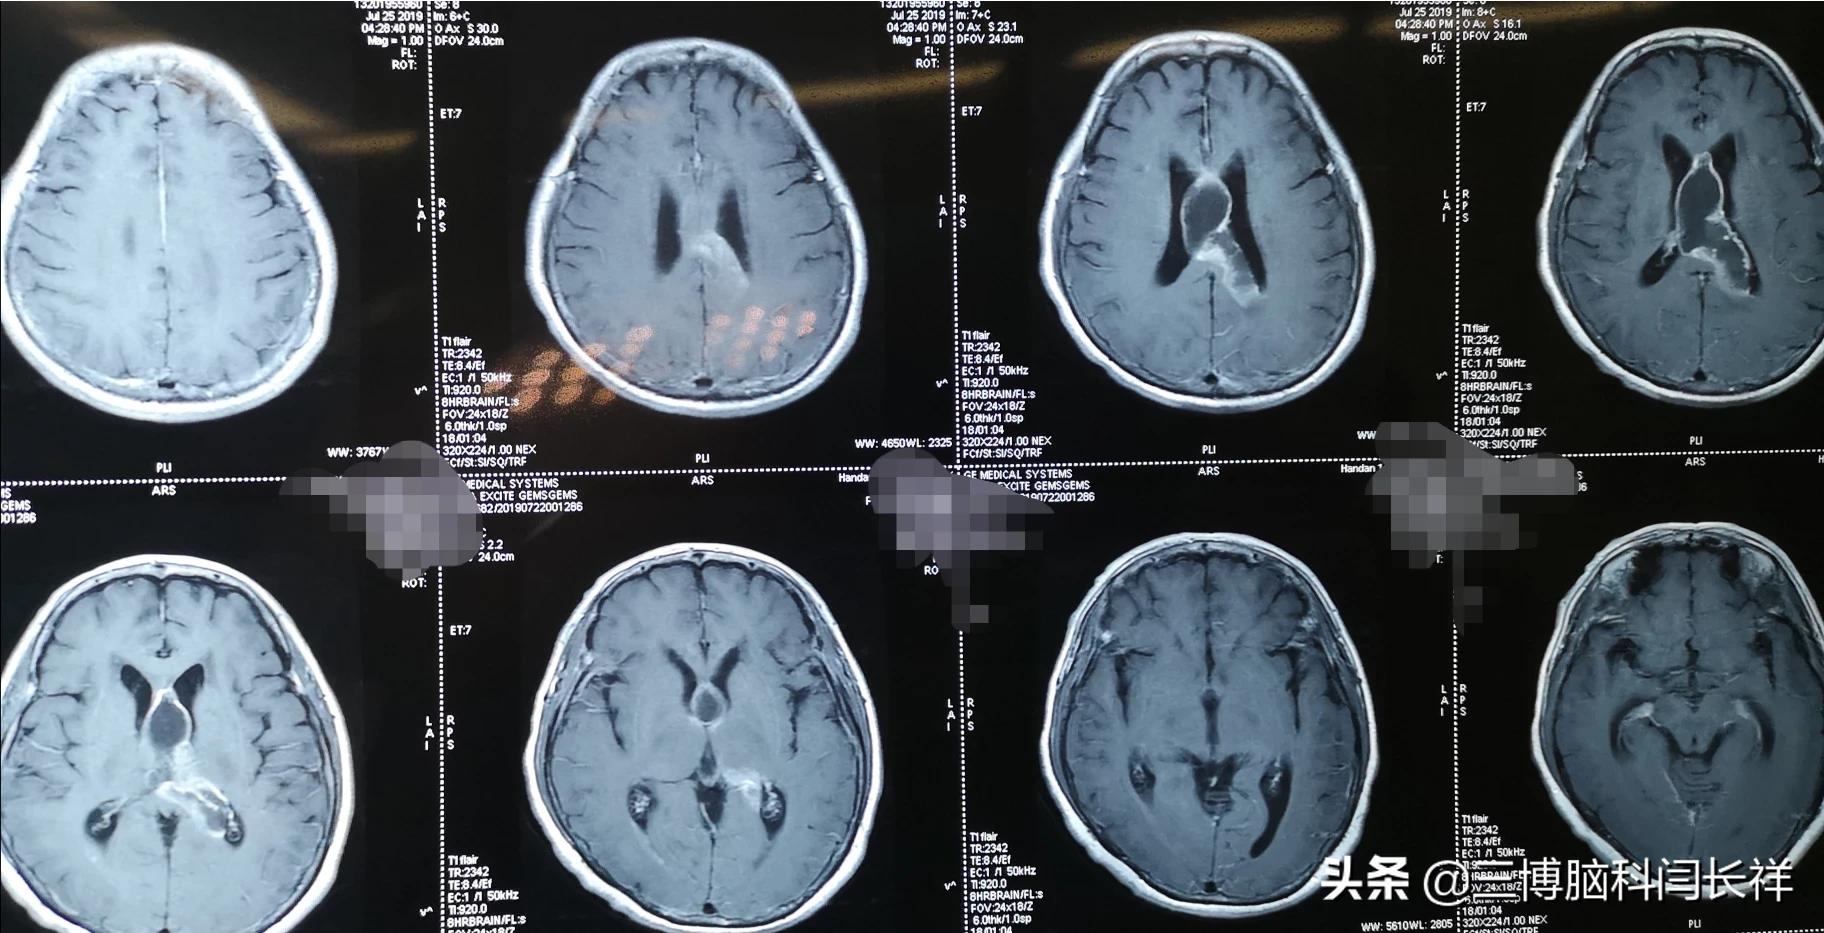 第二台(图5,6,7,8)是昨天的手术,肿瘤堵塞右侧脑室室间孔导致一侧脑